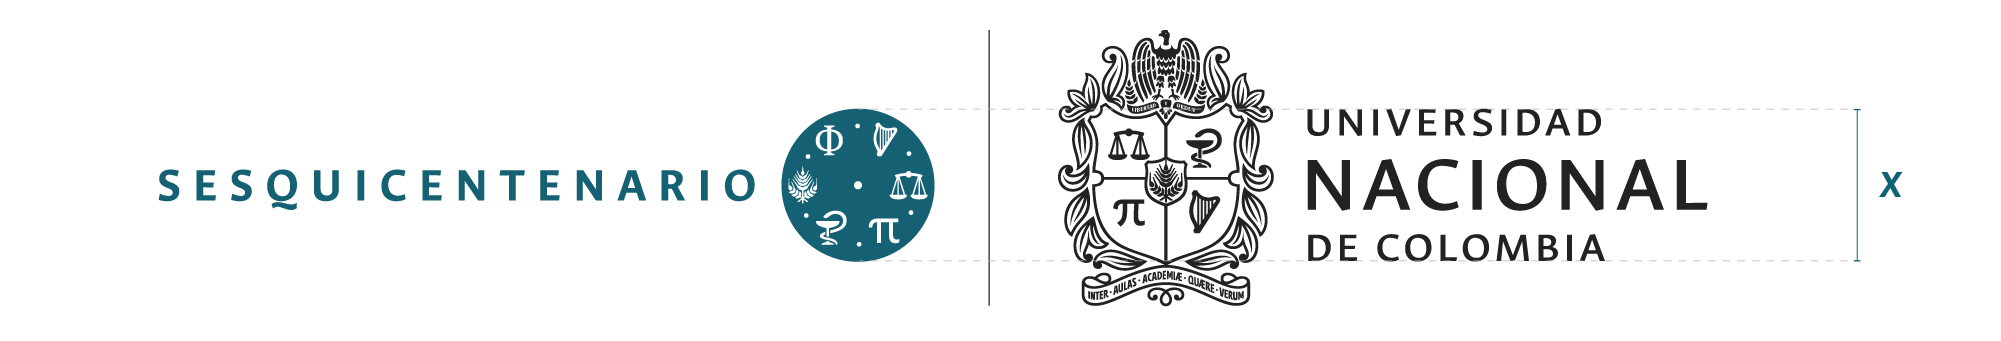 Tamaño del identificador del Sesquicentenario para piezas donde  aplique en conjunto con el logosímbolo institucional.